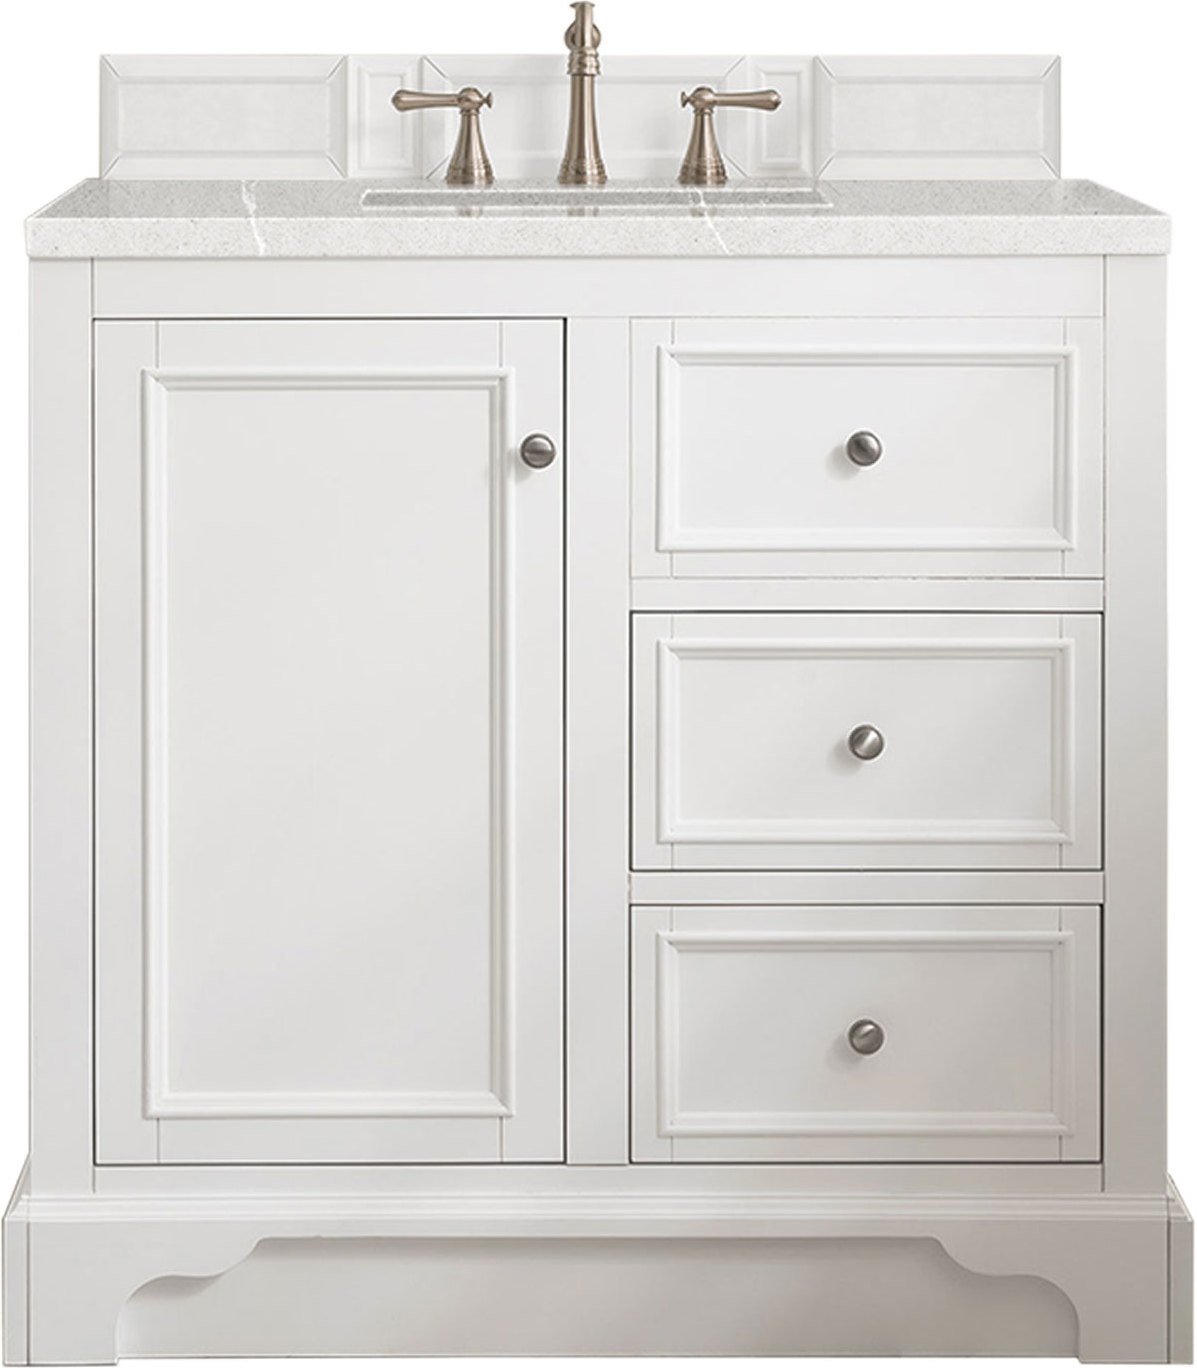 bathroom sink cabinet 30 inch James Martin Vanity Bright White Modern